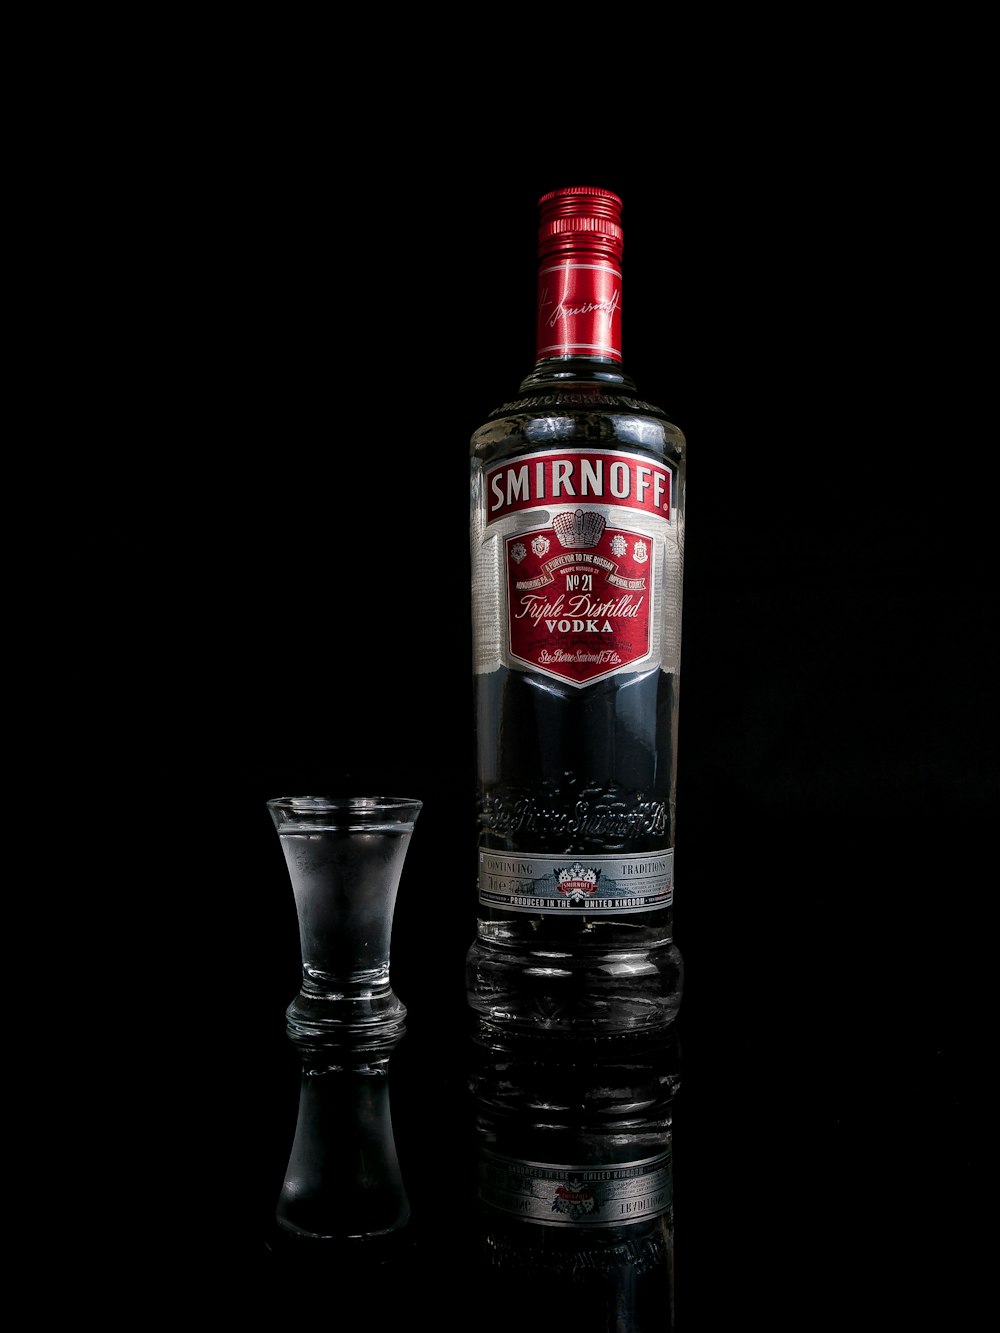 Smirnoff vodka bottle besides shot glass